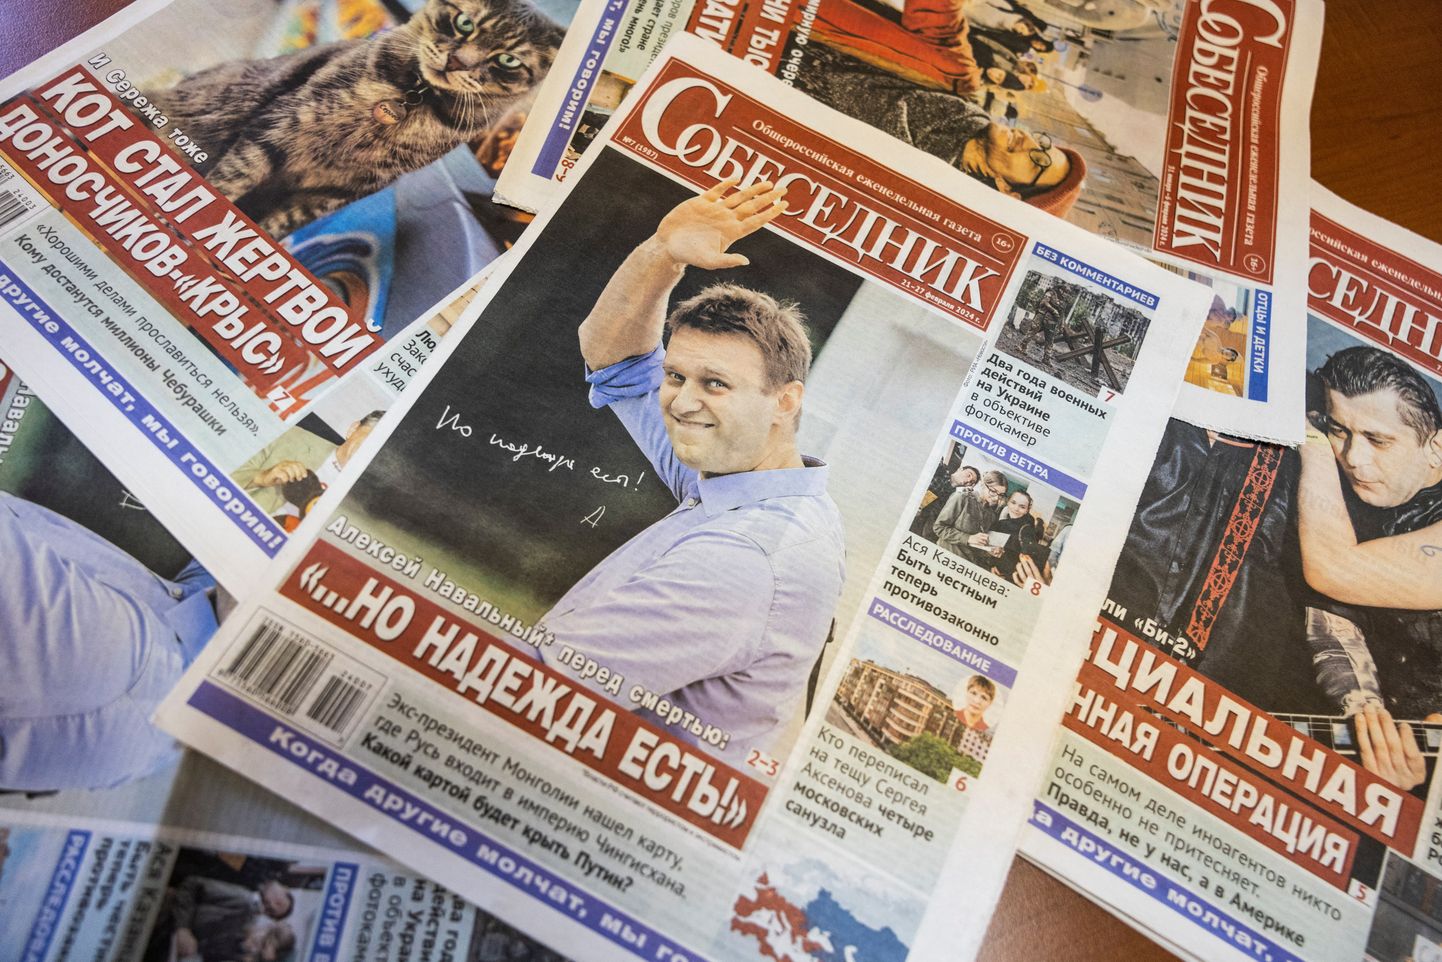 Vene väljaanne Sobesednik pani esiküljele naeratava Aleksei Navalnõi foto ja kirjutas suure järelehüüde, kuid see ei meeldinud Vene võimudele ja number konfiskeeriti.